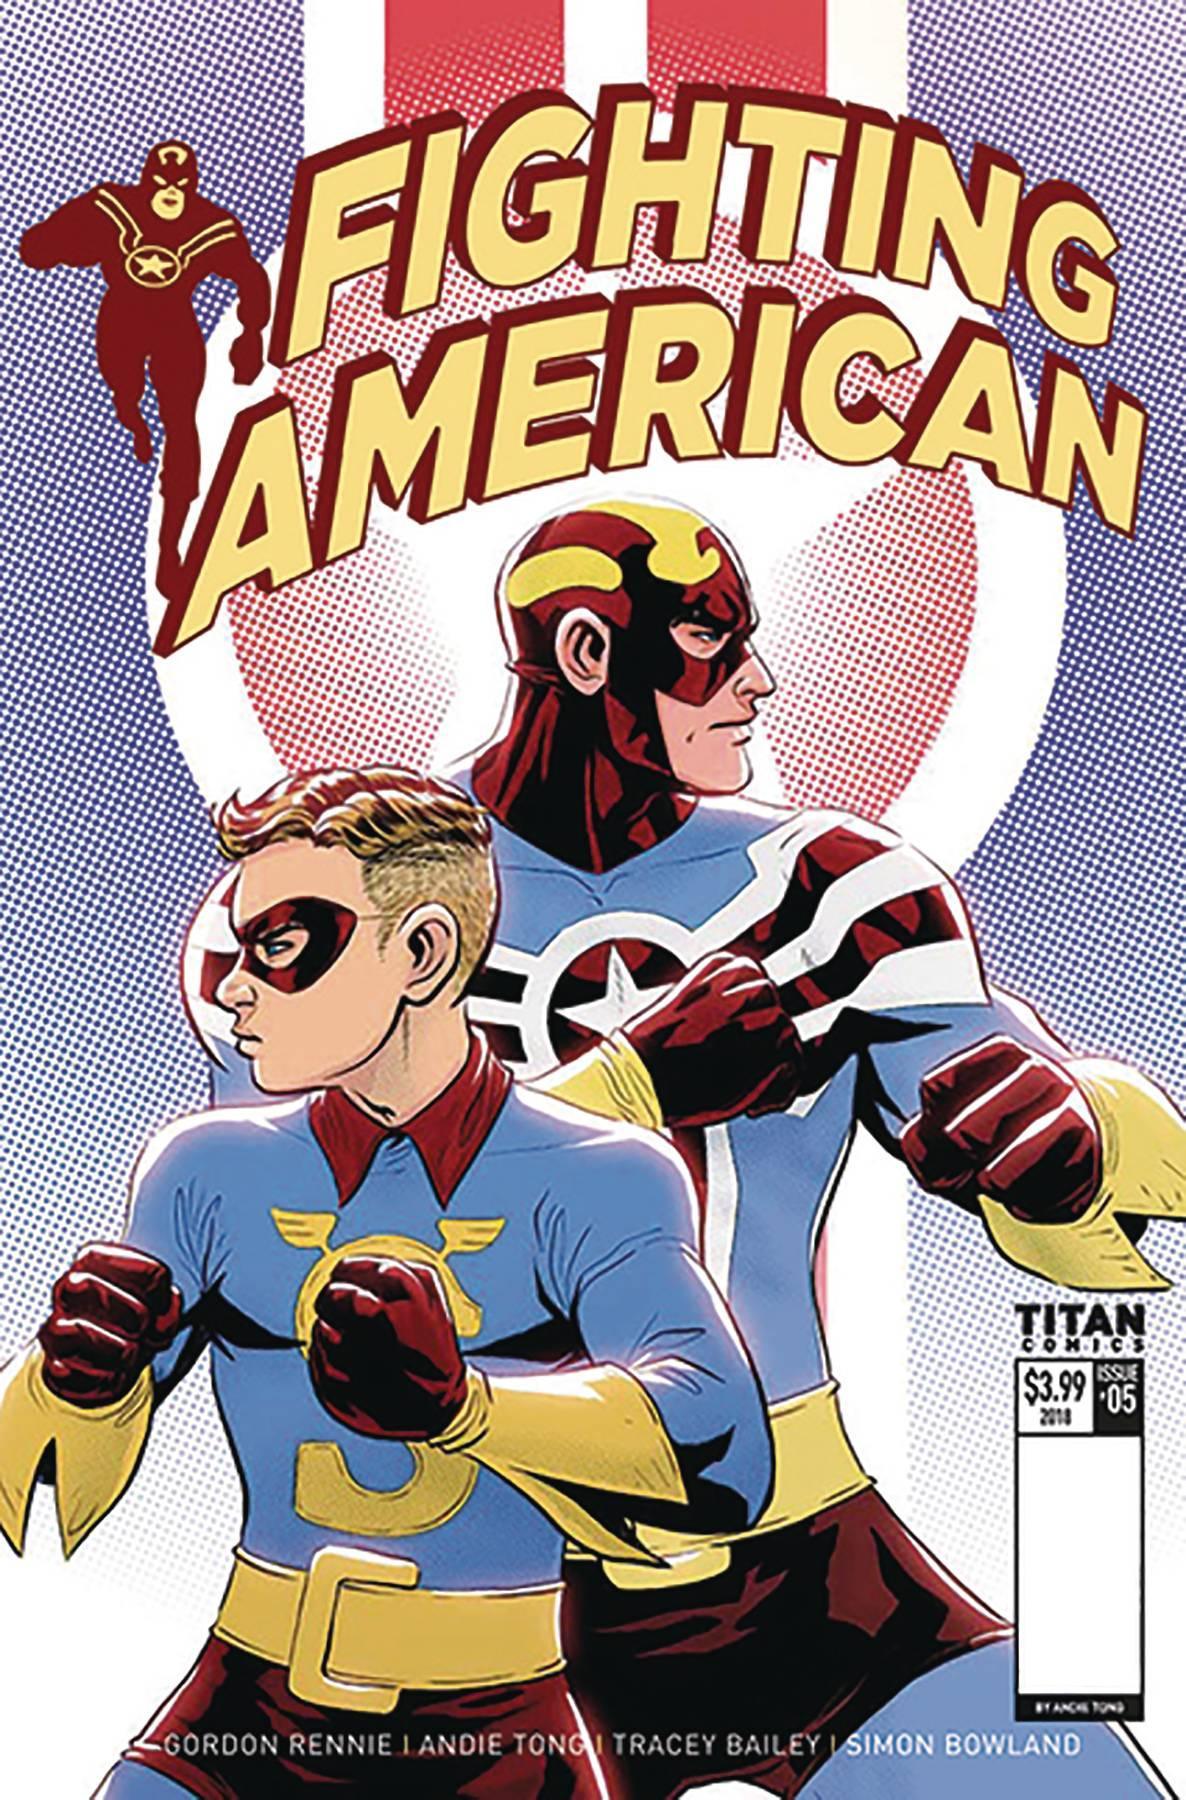 FIGHTING AMERICAN TIES THAT BIND #1 CVR C TONG - Kings Comics